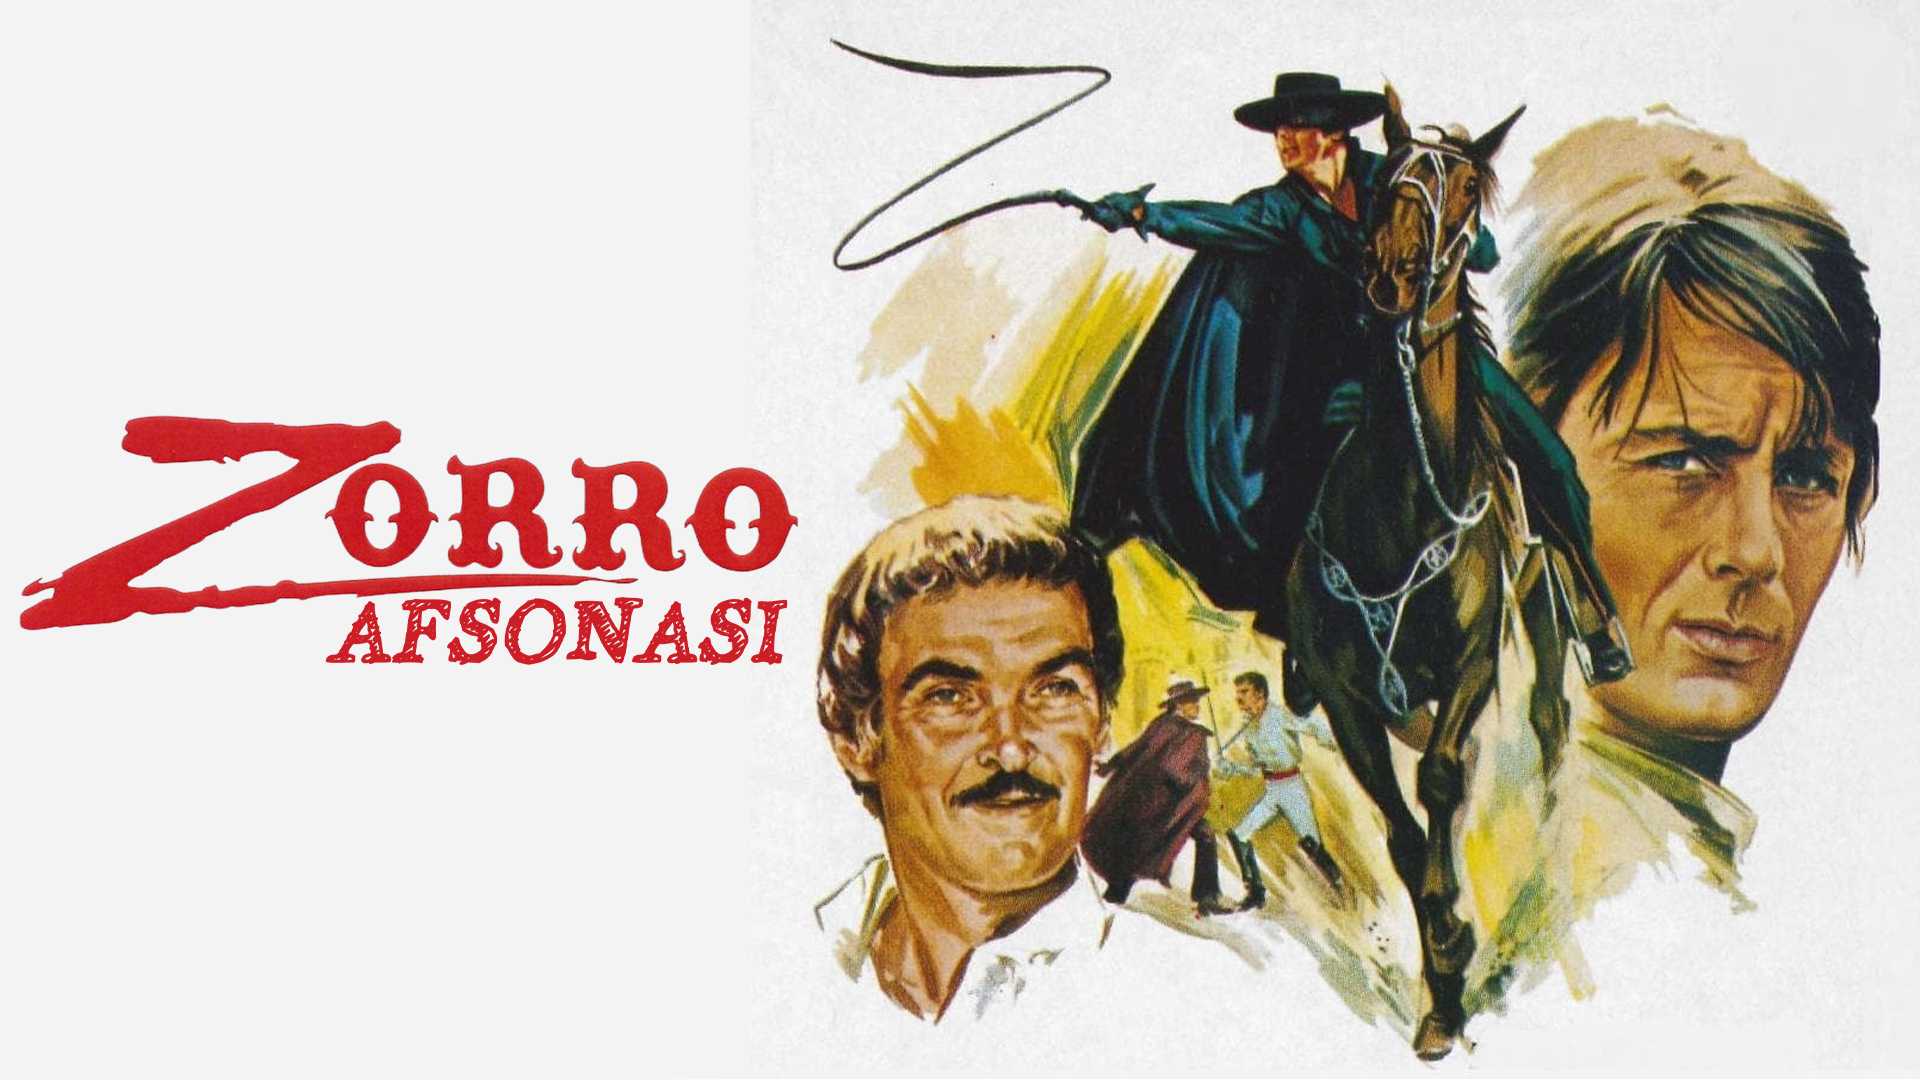 Zorro Afsonasi Uzbek Tilida